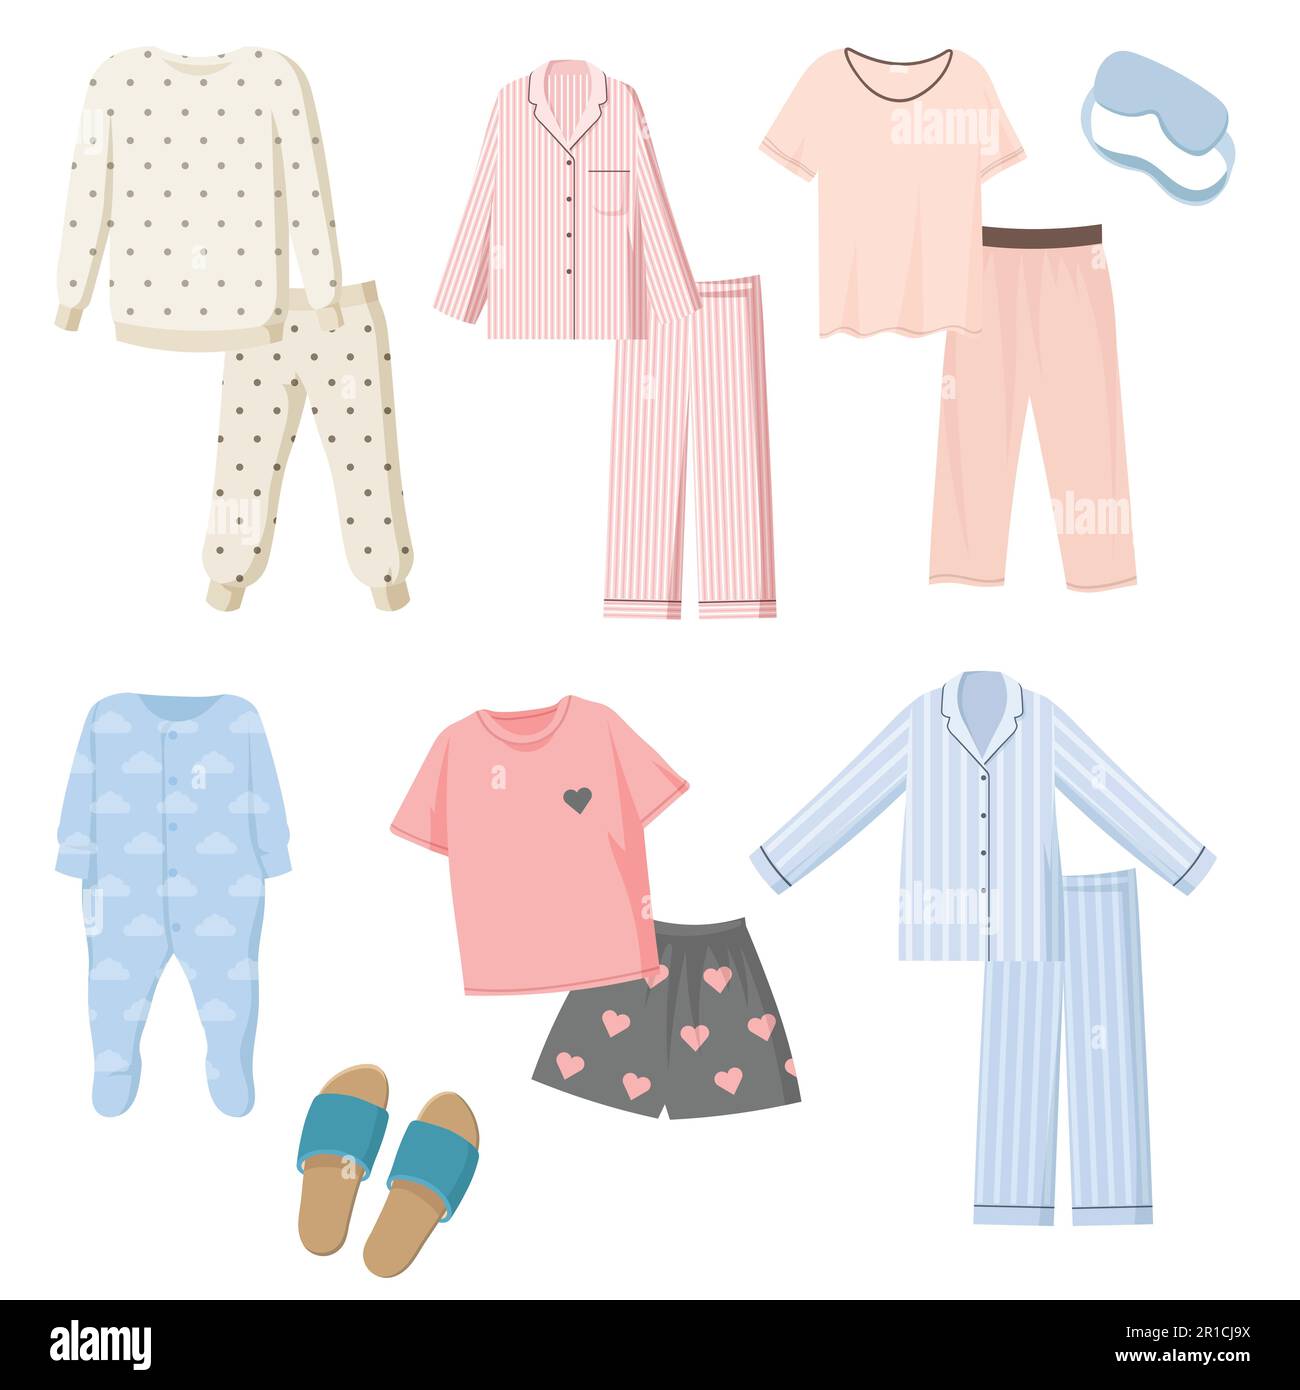 Premium Vector  Cute children characters in pajamas